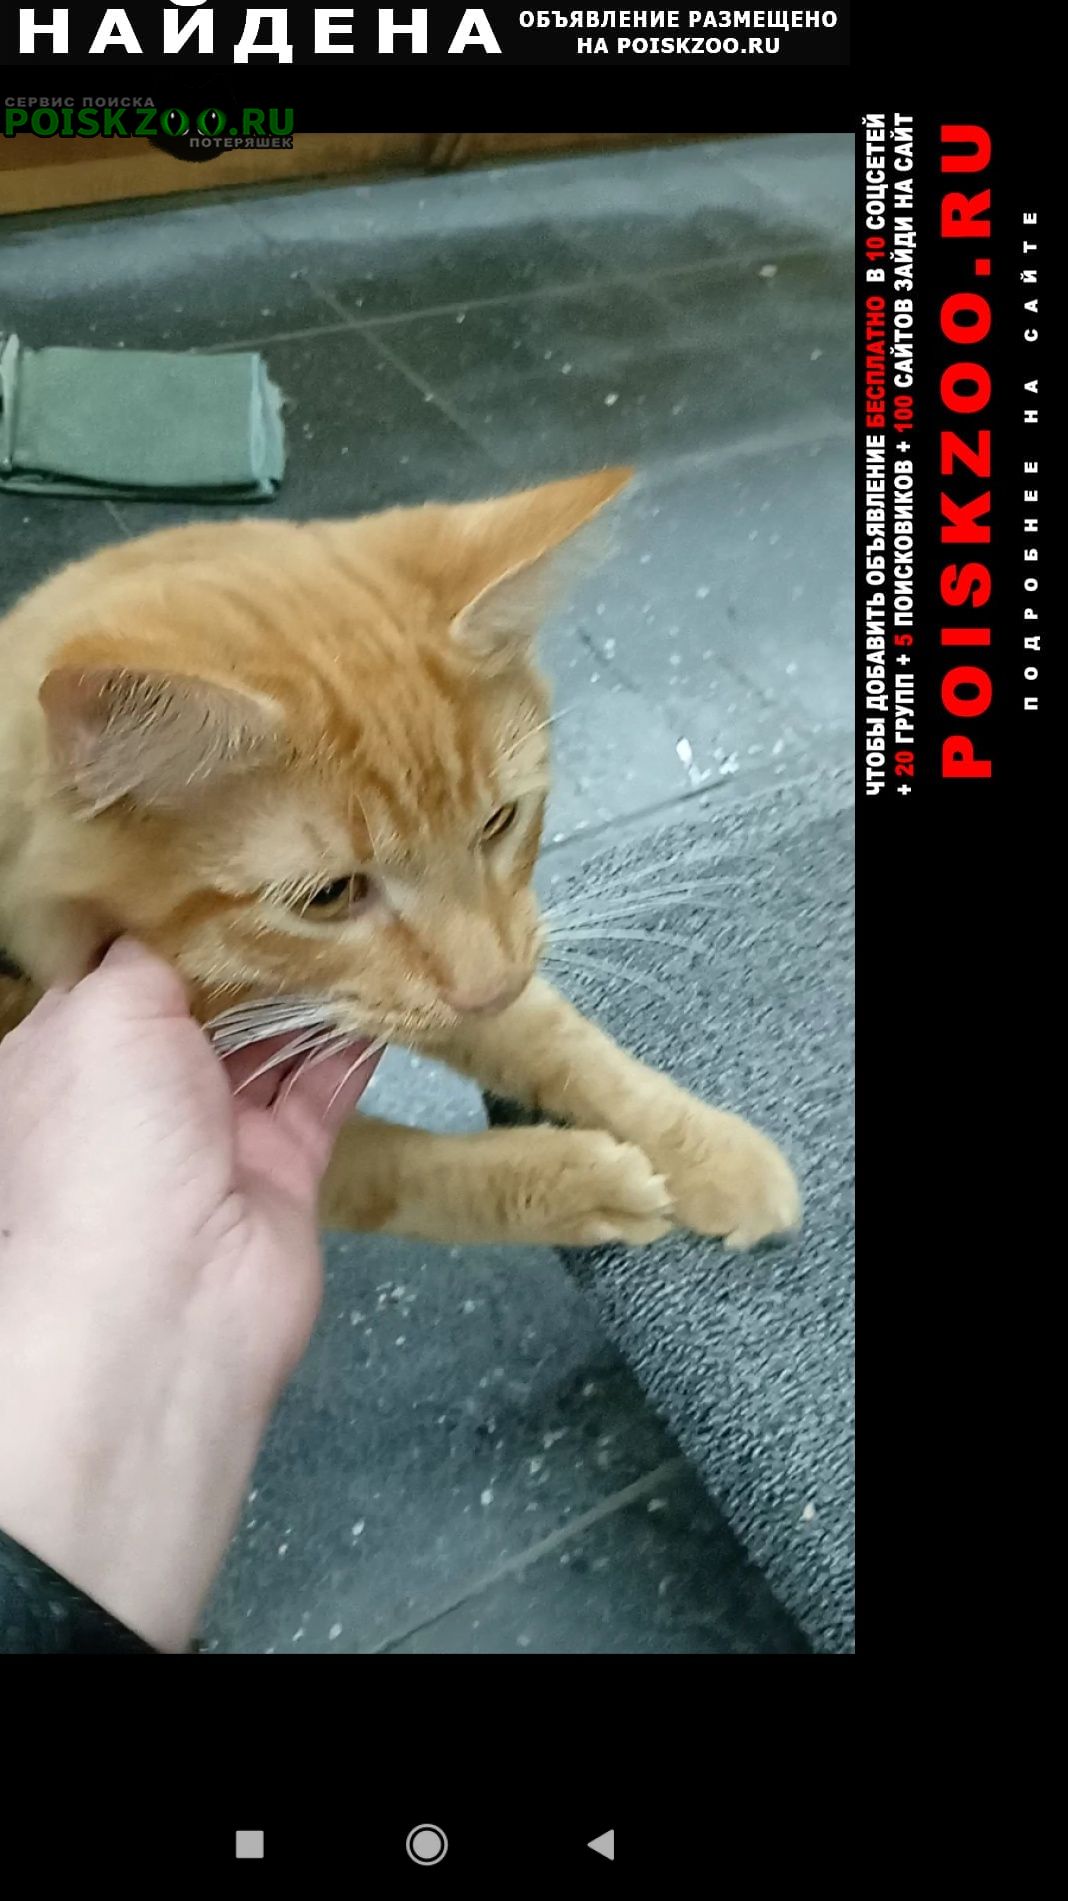 Найден котик возле уралмашевского рынка Екатеринбург